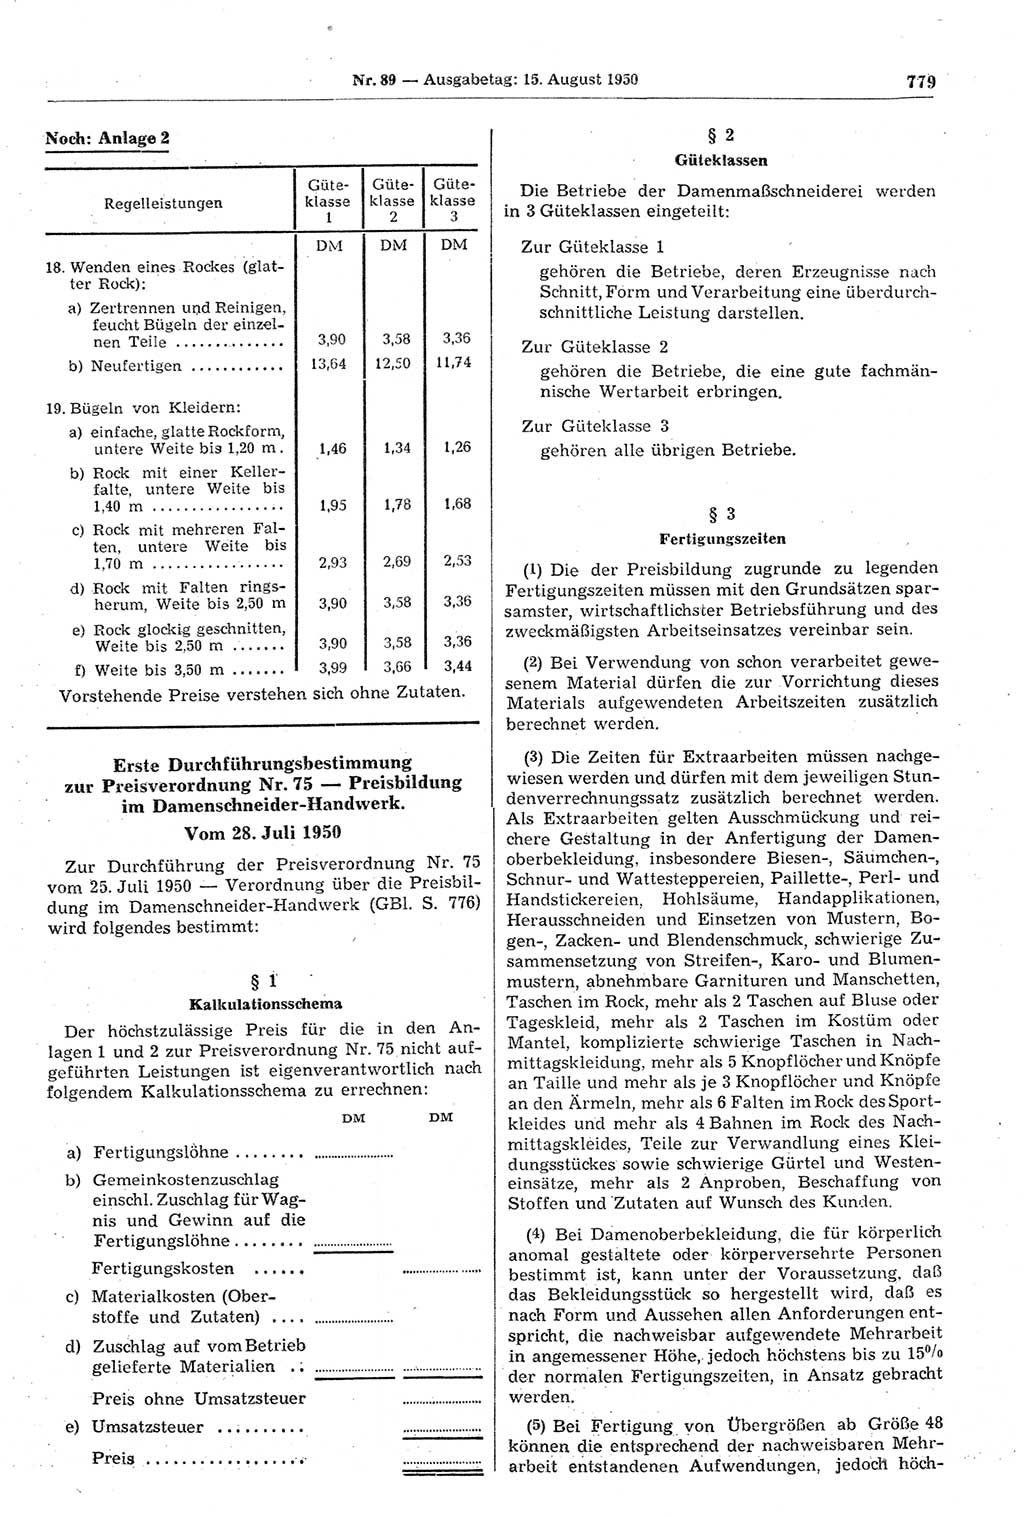 Gesetzblatt (GBl.) der Deutschen Demokratischen Republik (DDR) 1950, Seite 779 (GBl. DDR 1950, S. 779)